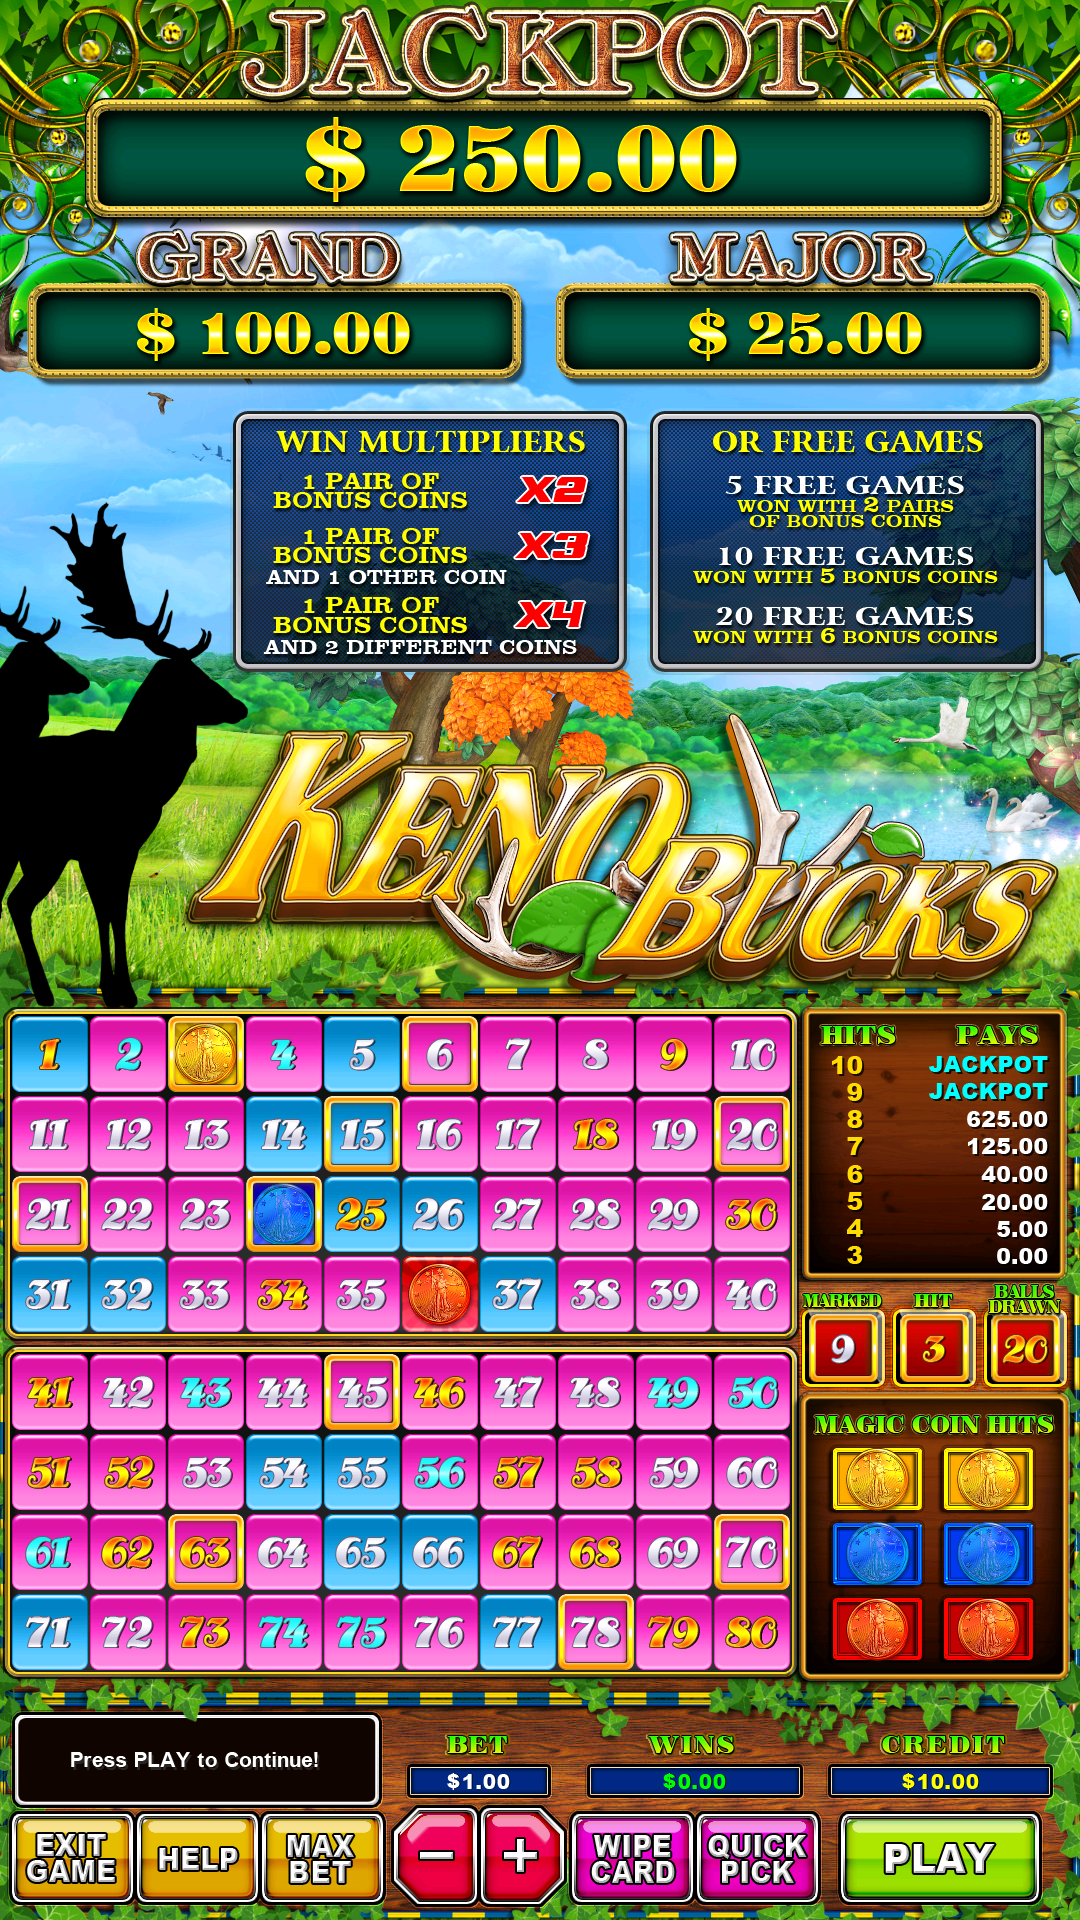 Keno-Bucks